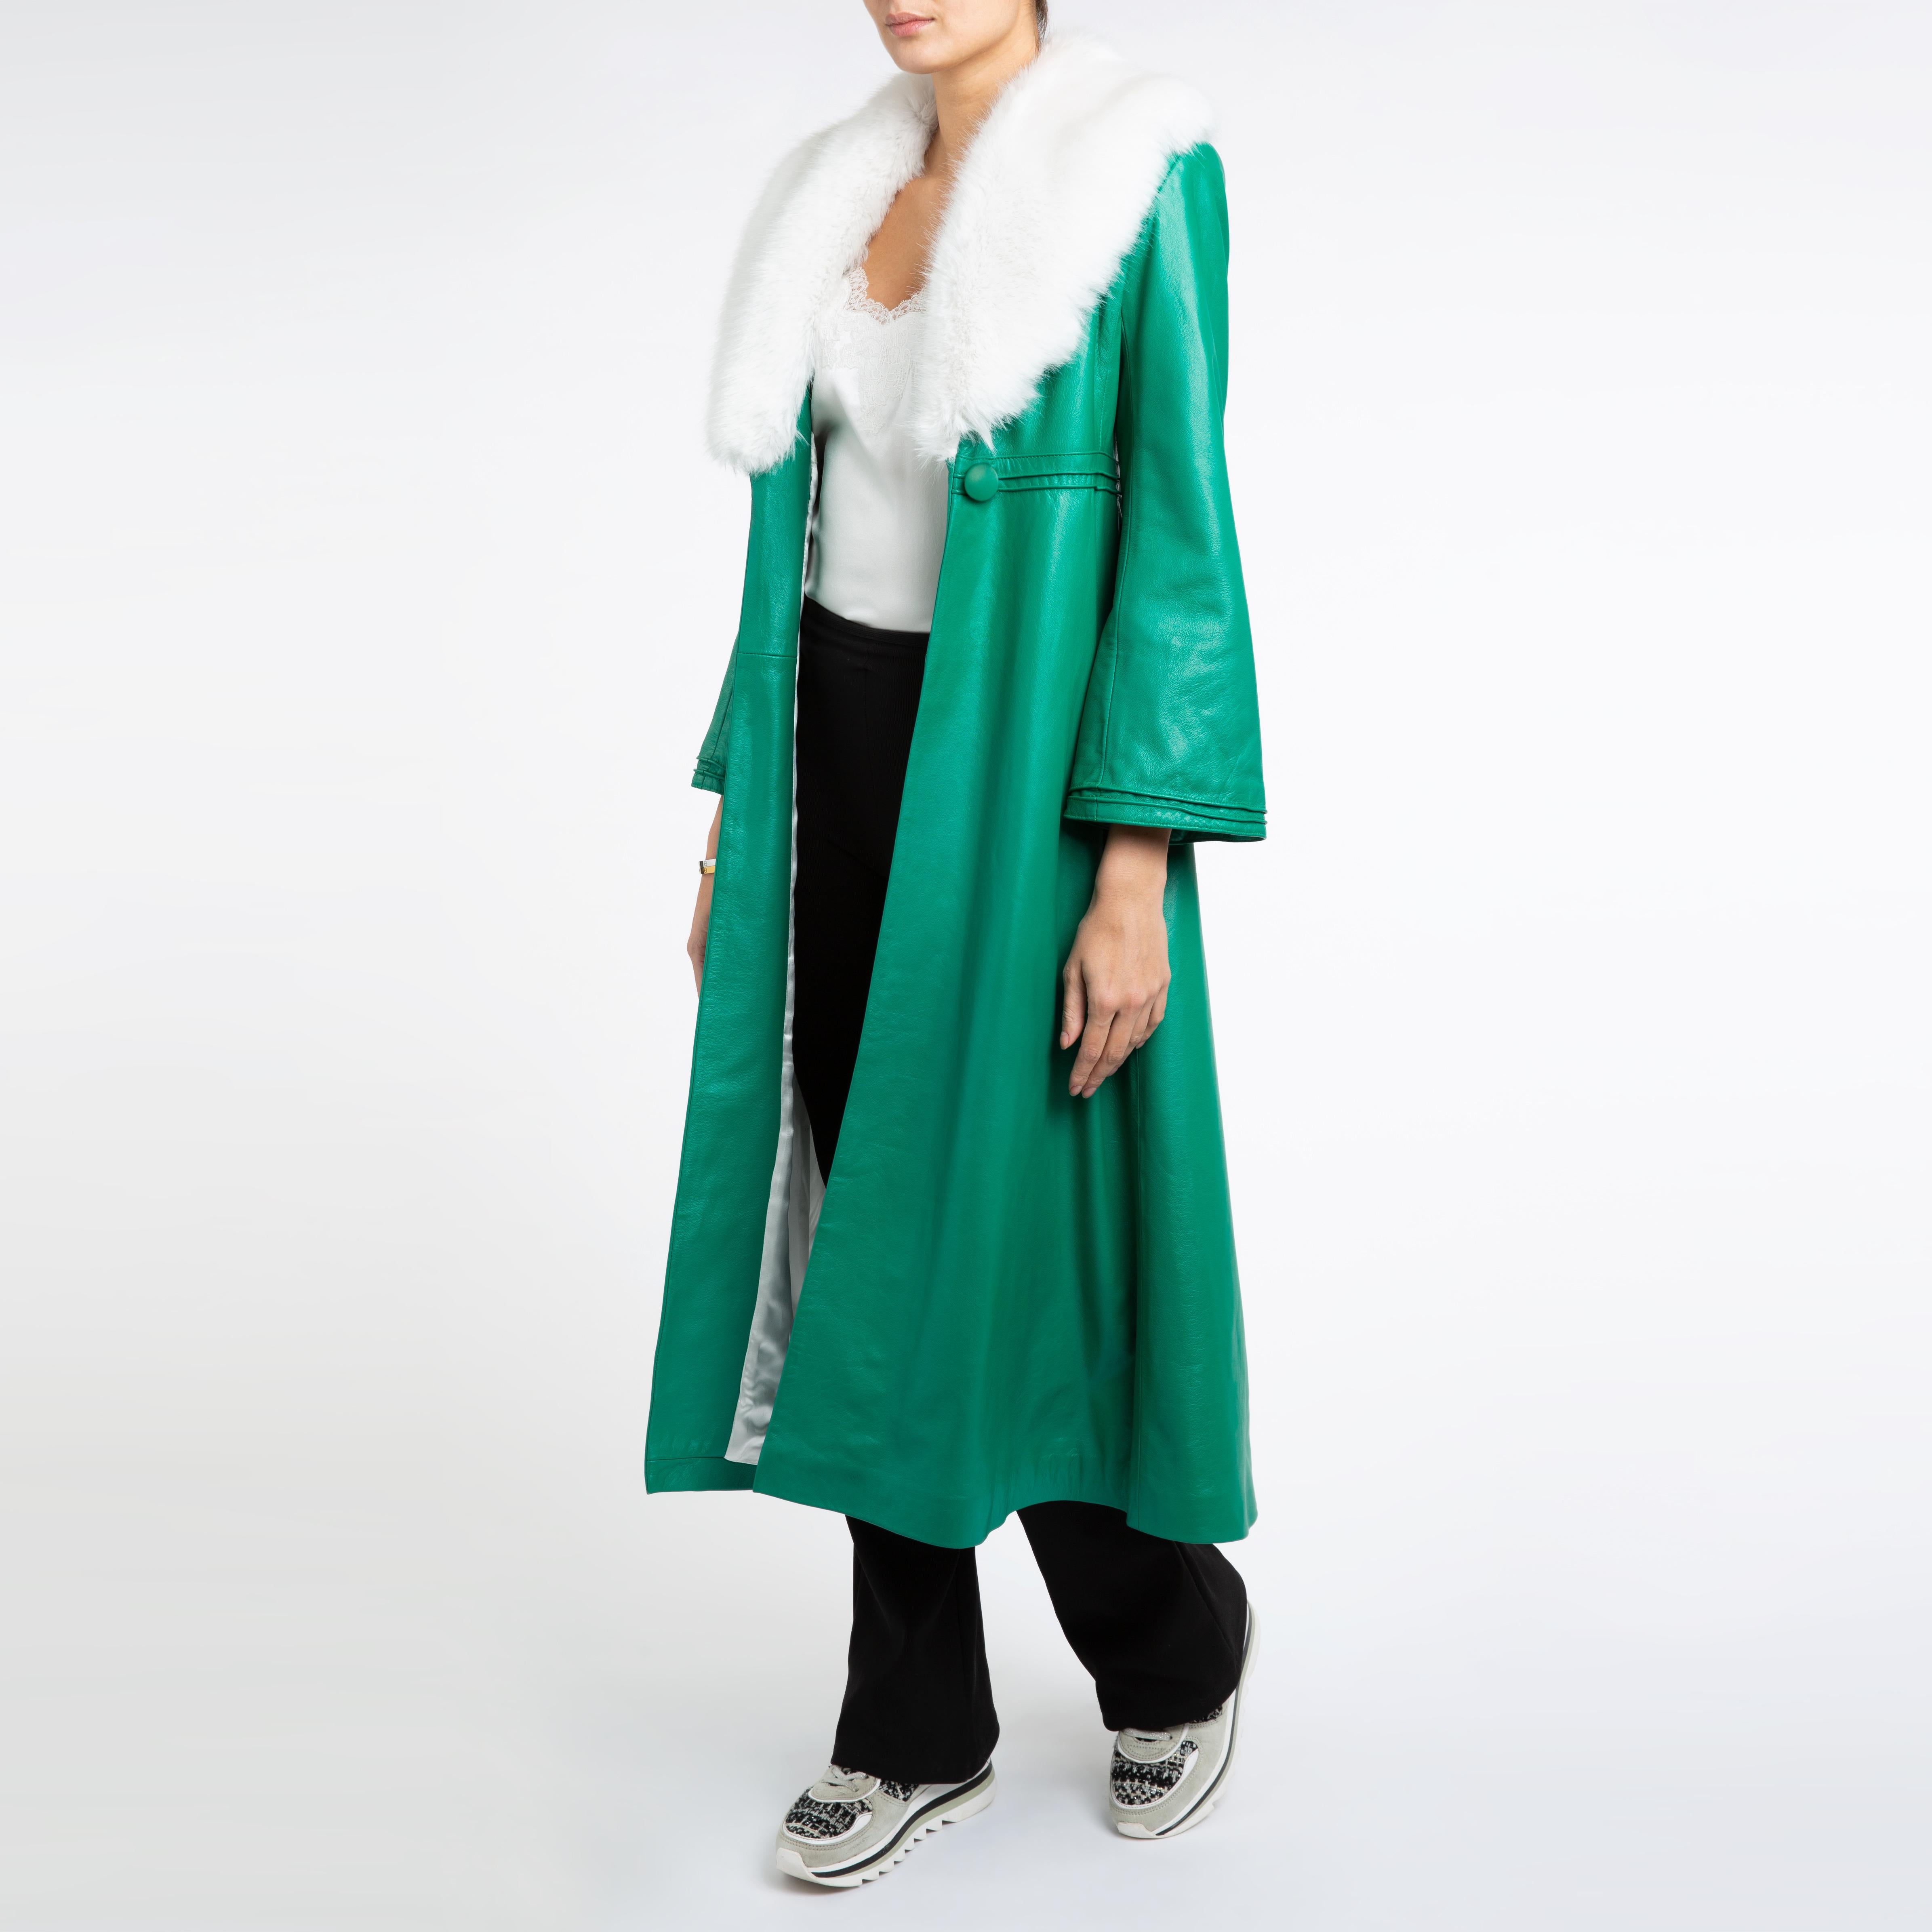 Verheyen London Edward Leather Coat in Green & White Faux Fur - Size 8 UK  For Sale 5